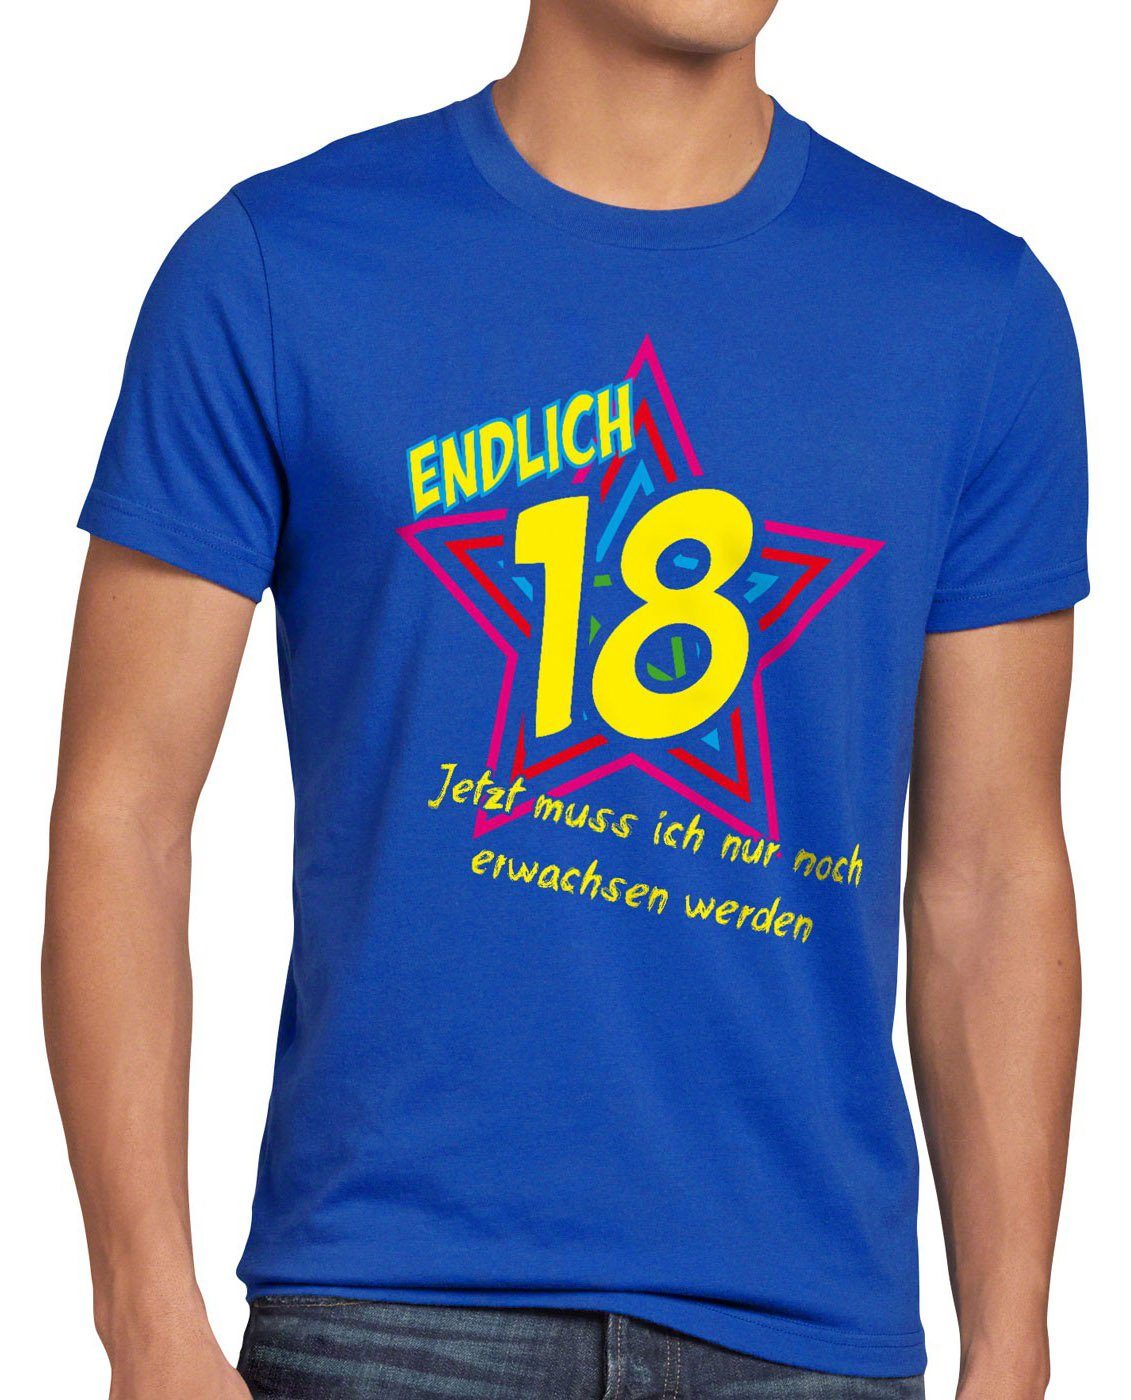 style3 Print-Shirt Funshirt Herren Jetzt werden! T-Shirt 18 noch blau Geburtstag Fun erwachsen Endlich